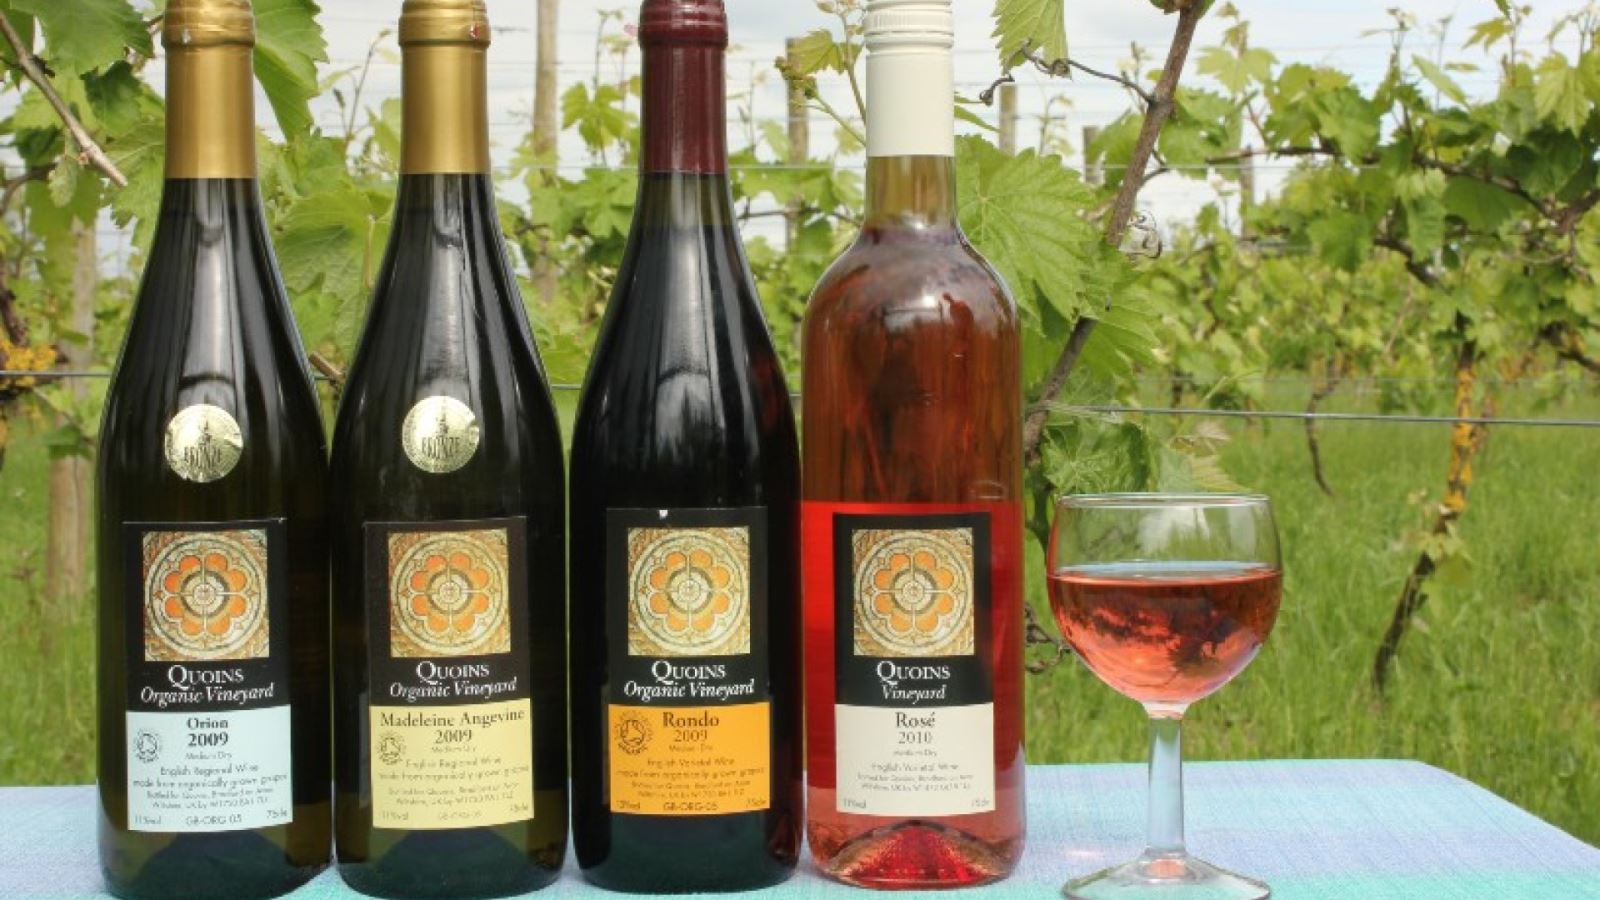 Quoins Organic Vineyard - Wine Bottles